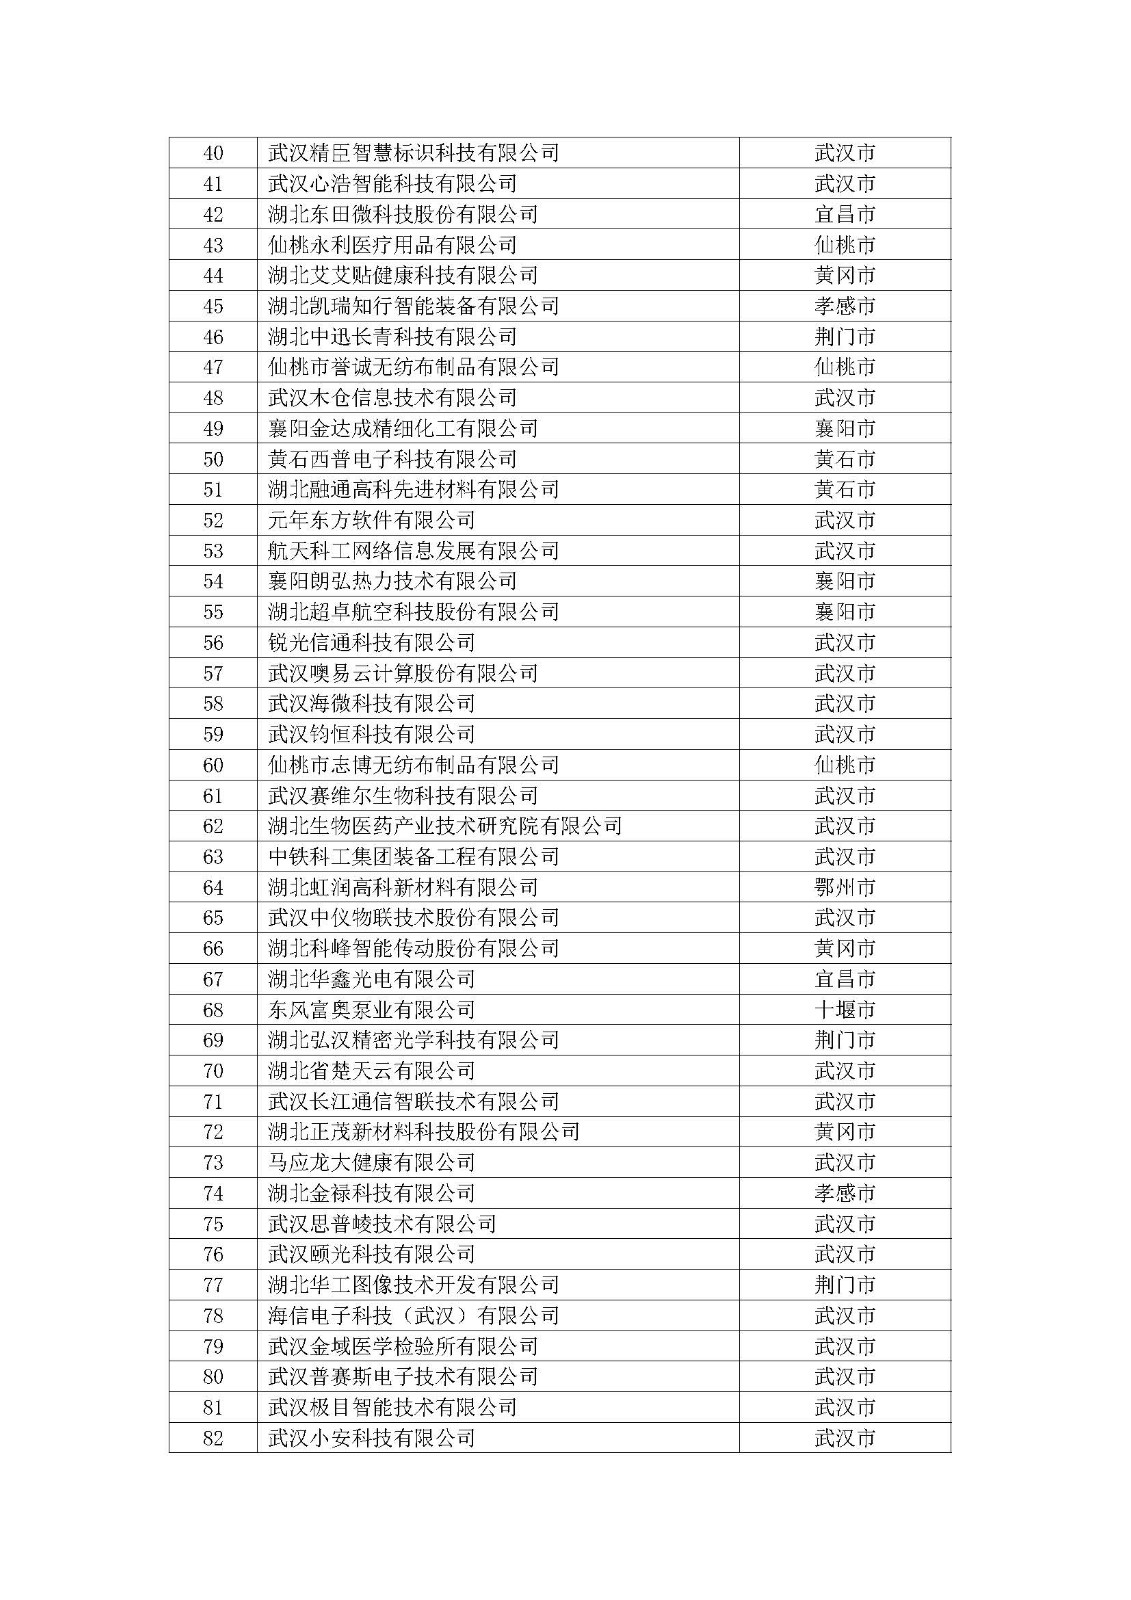 第一批拟入库湖北省科创“新物种”企业名单_页面_03.jpg